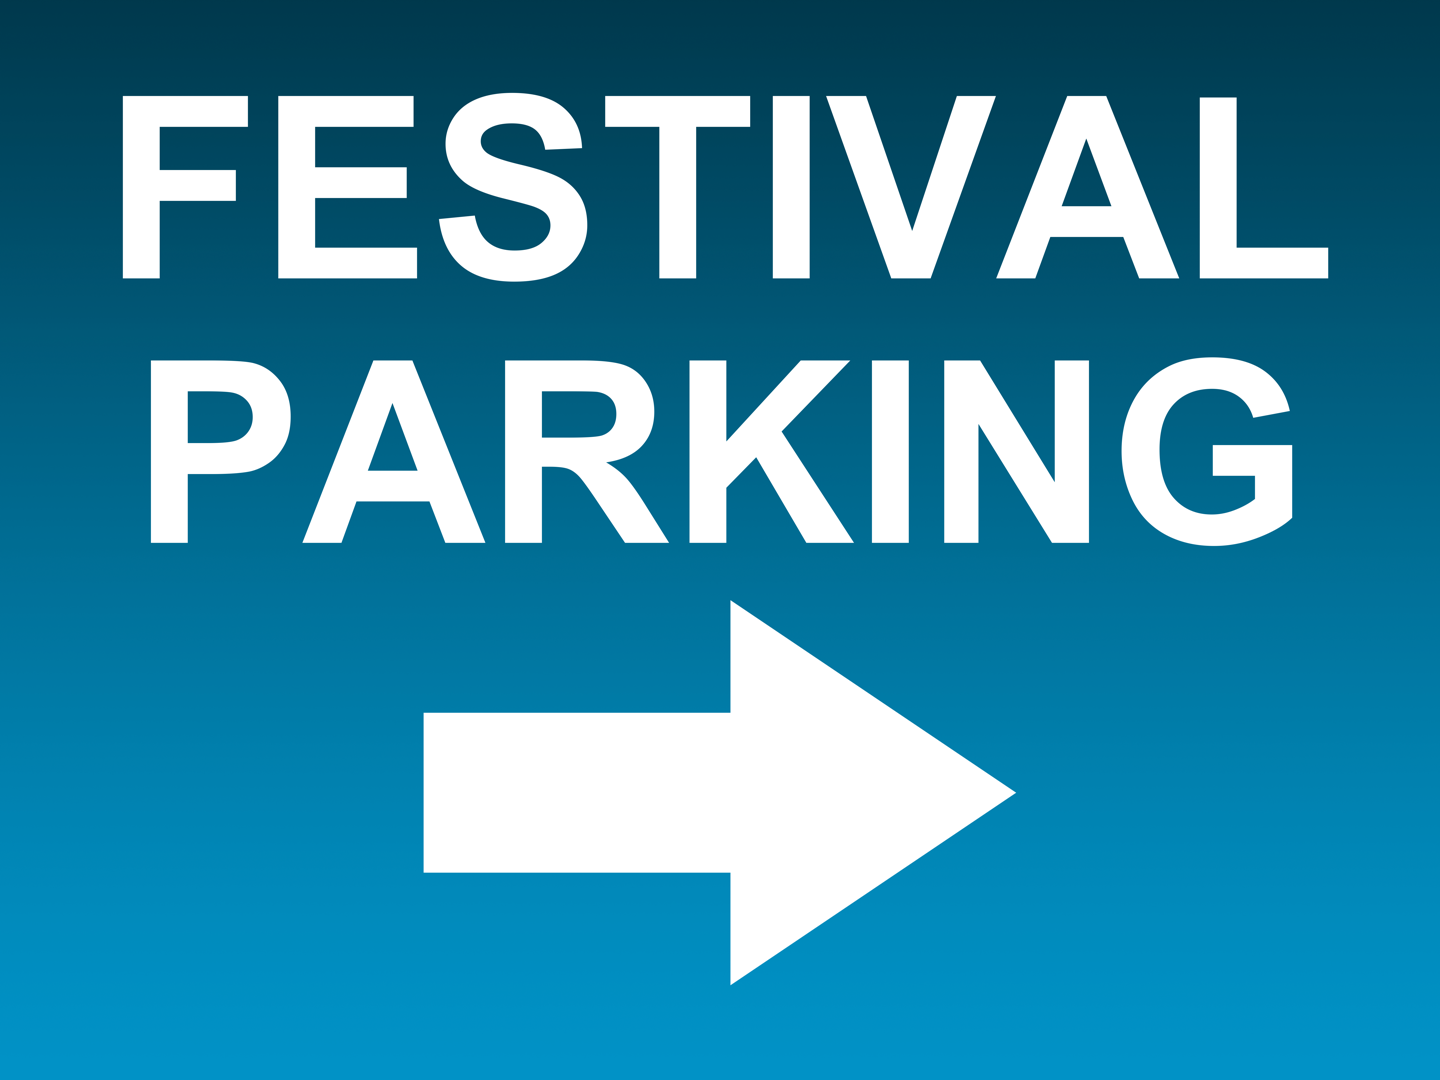 Festival Parking Sign